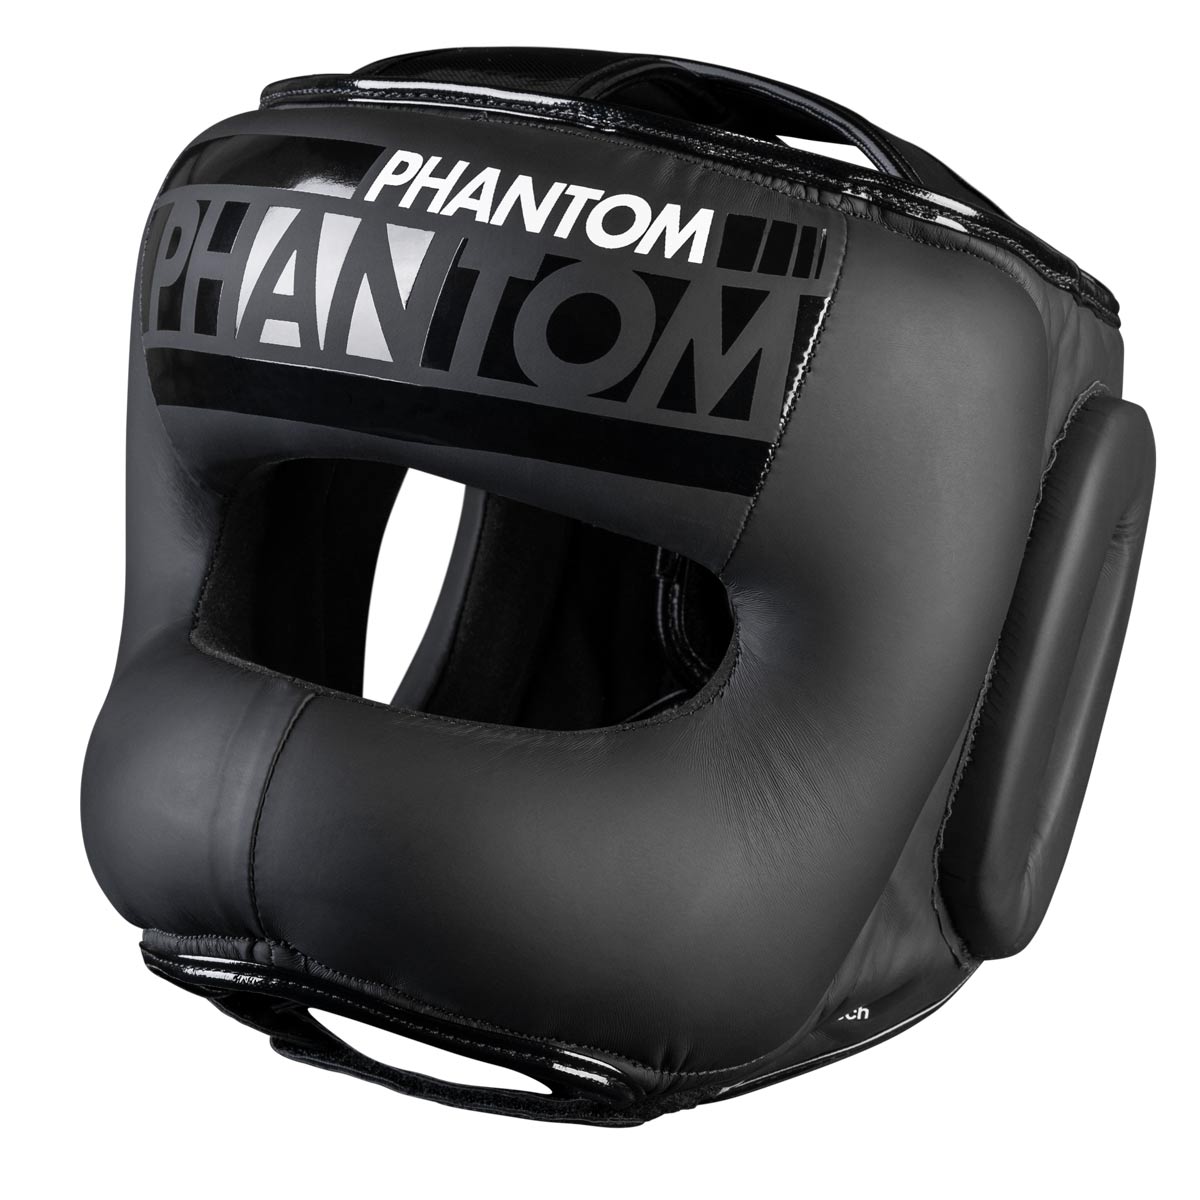 Der Phantom APEX Facesaver Kopfschutz mit dickem Bügel für einen maximalen Schutz des Gesichts.